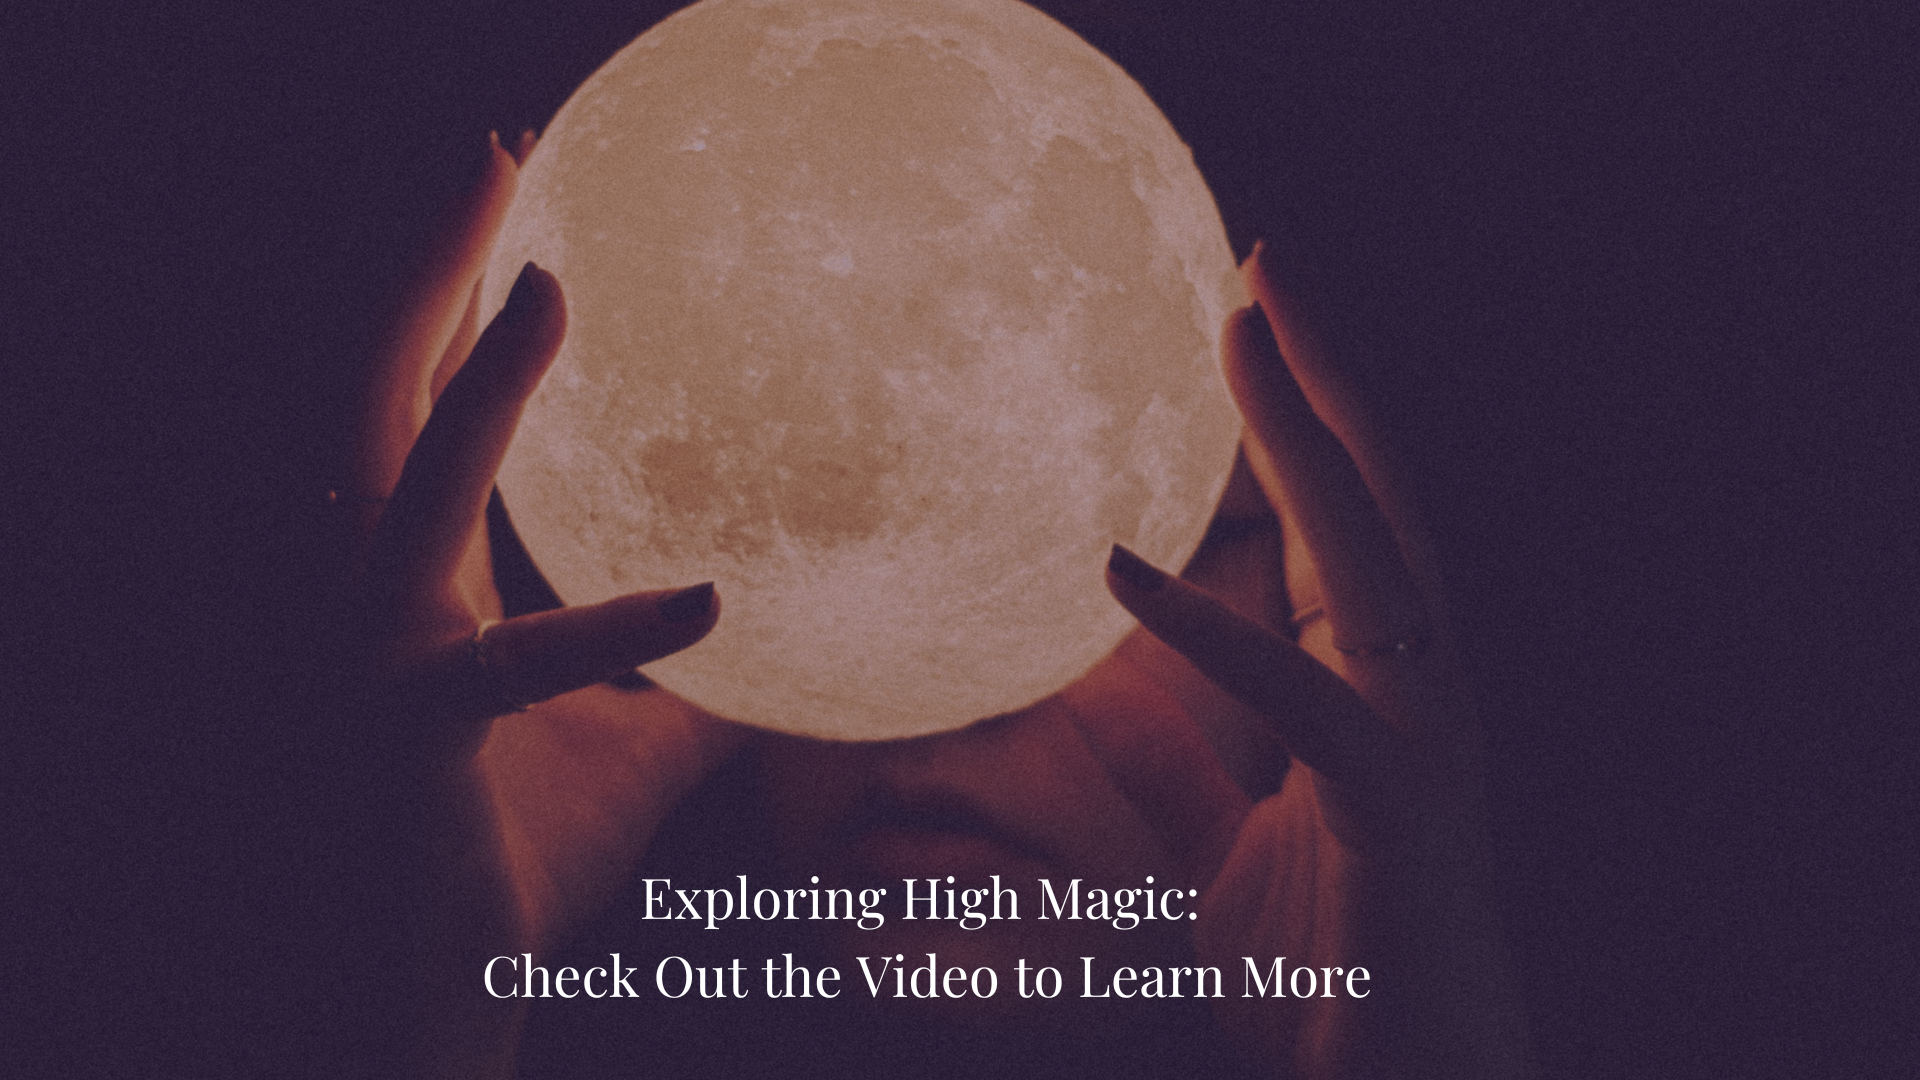 Load video: Explore magic rituals